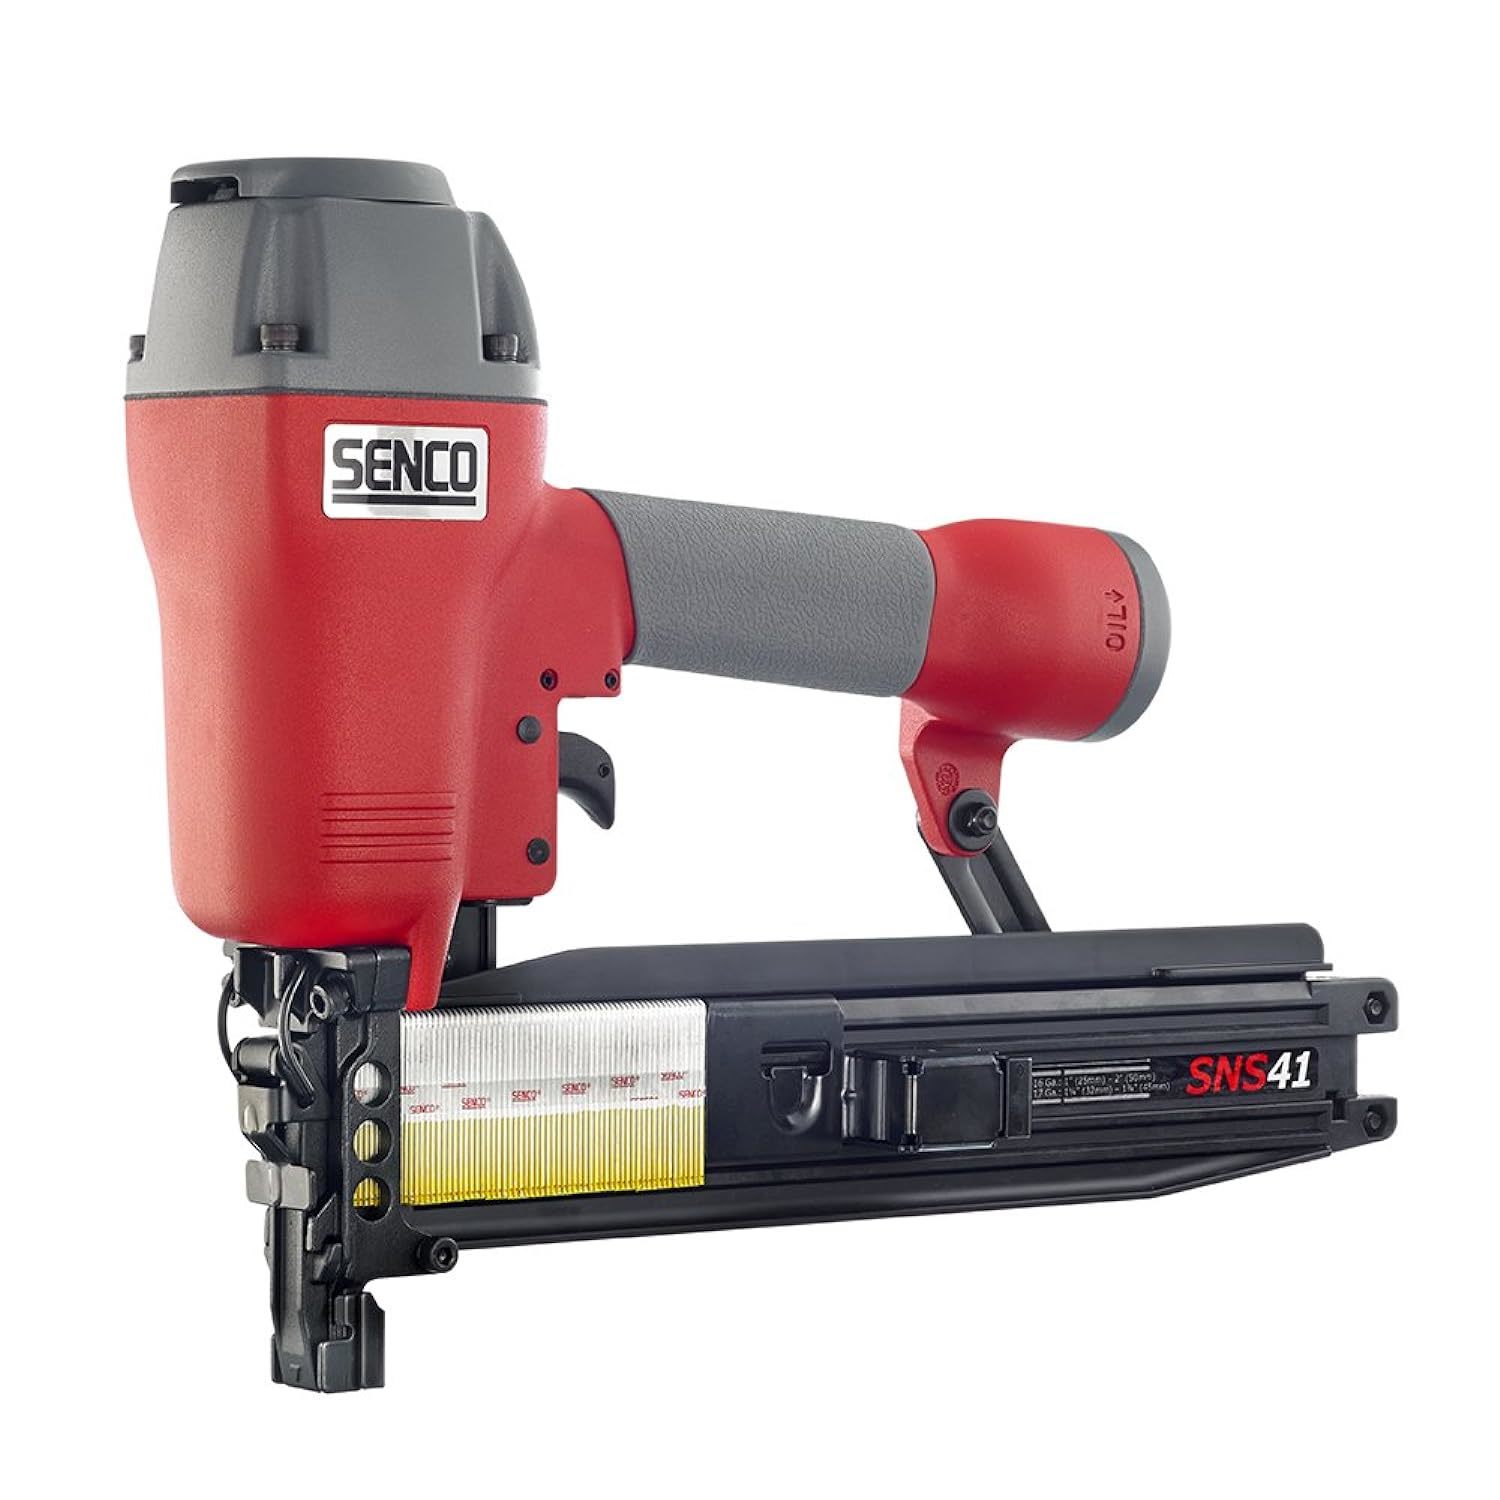 Senco - 3L0003N SNS41 16-Gauge Construction Stapler - $300.19